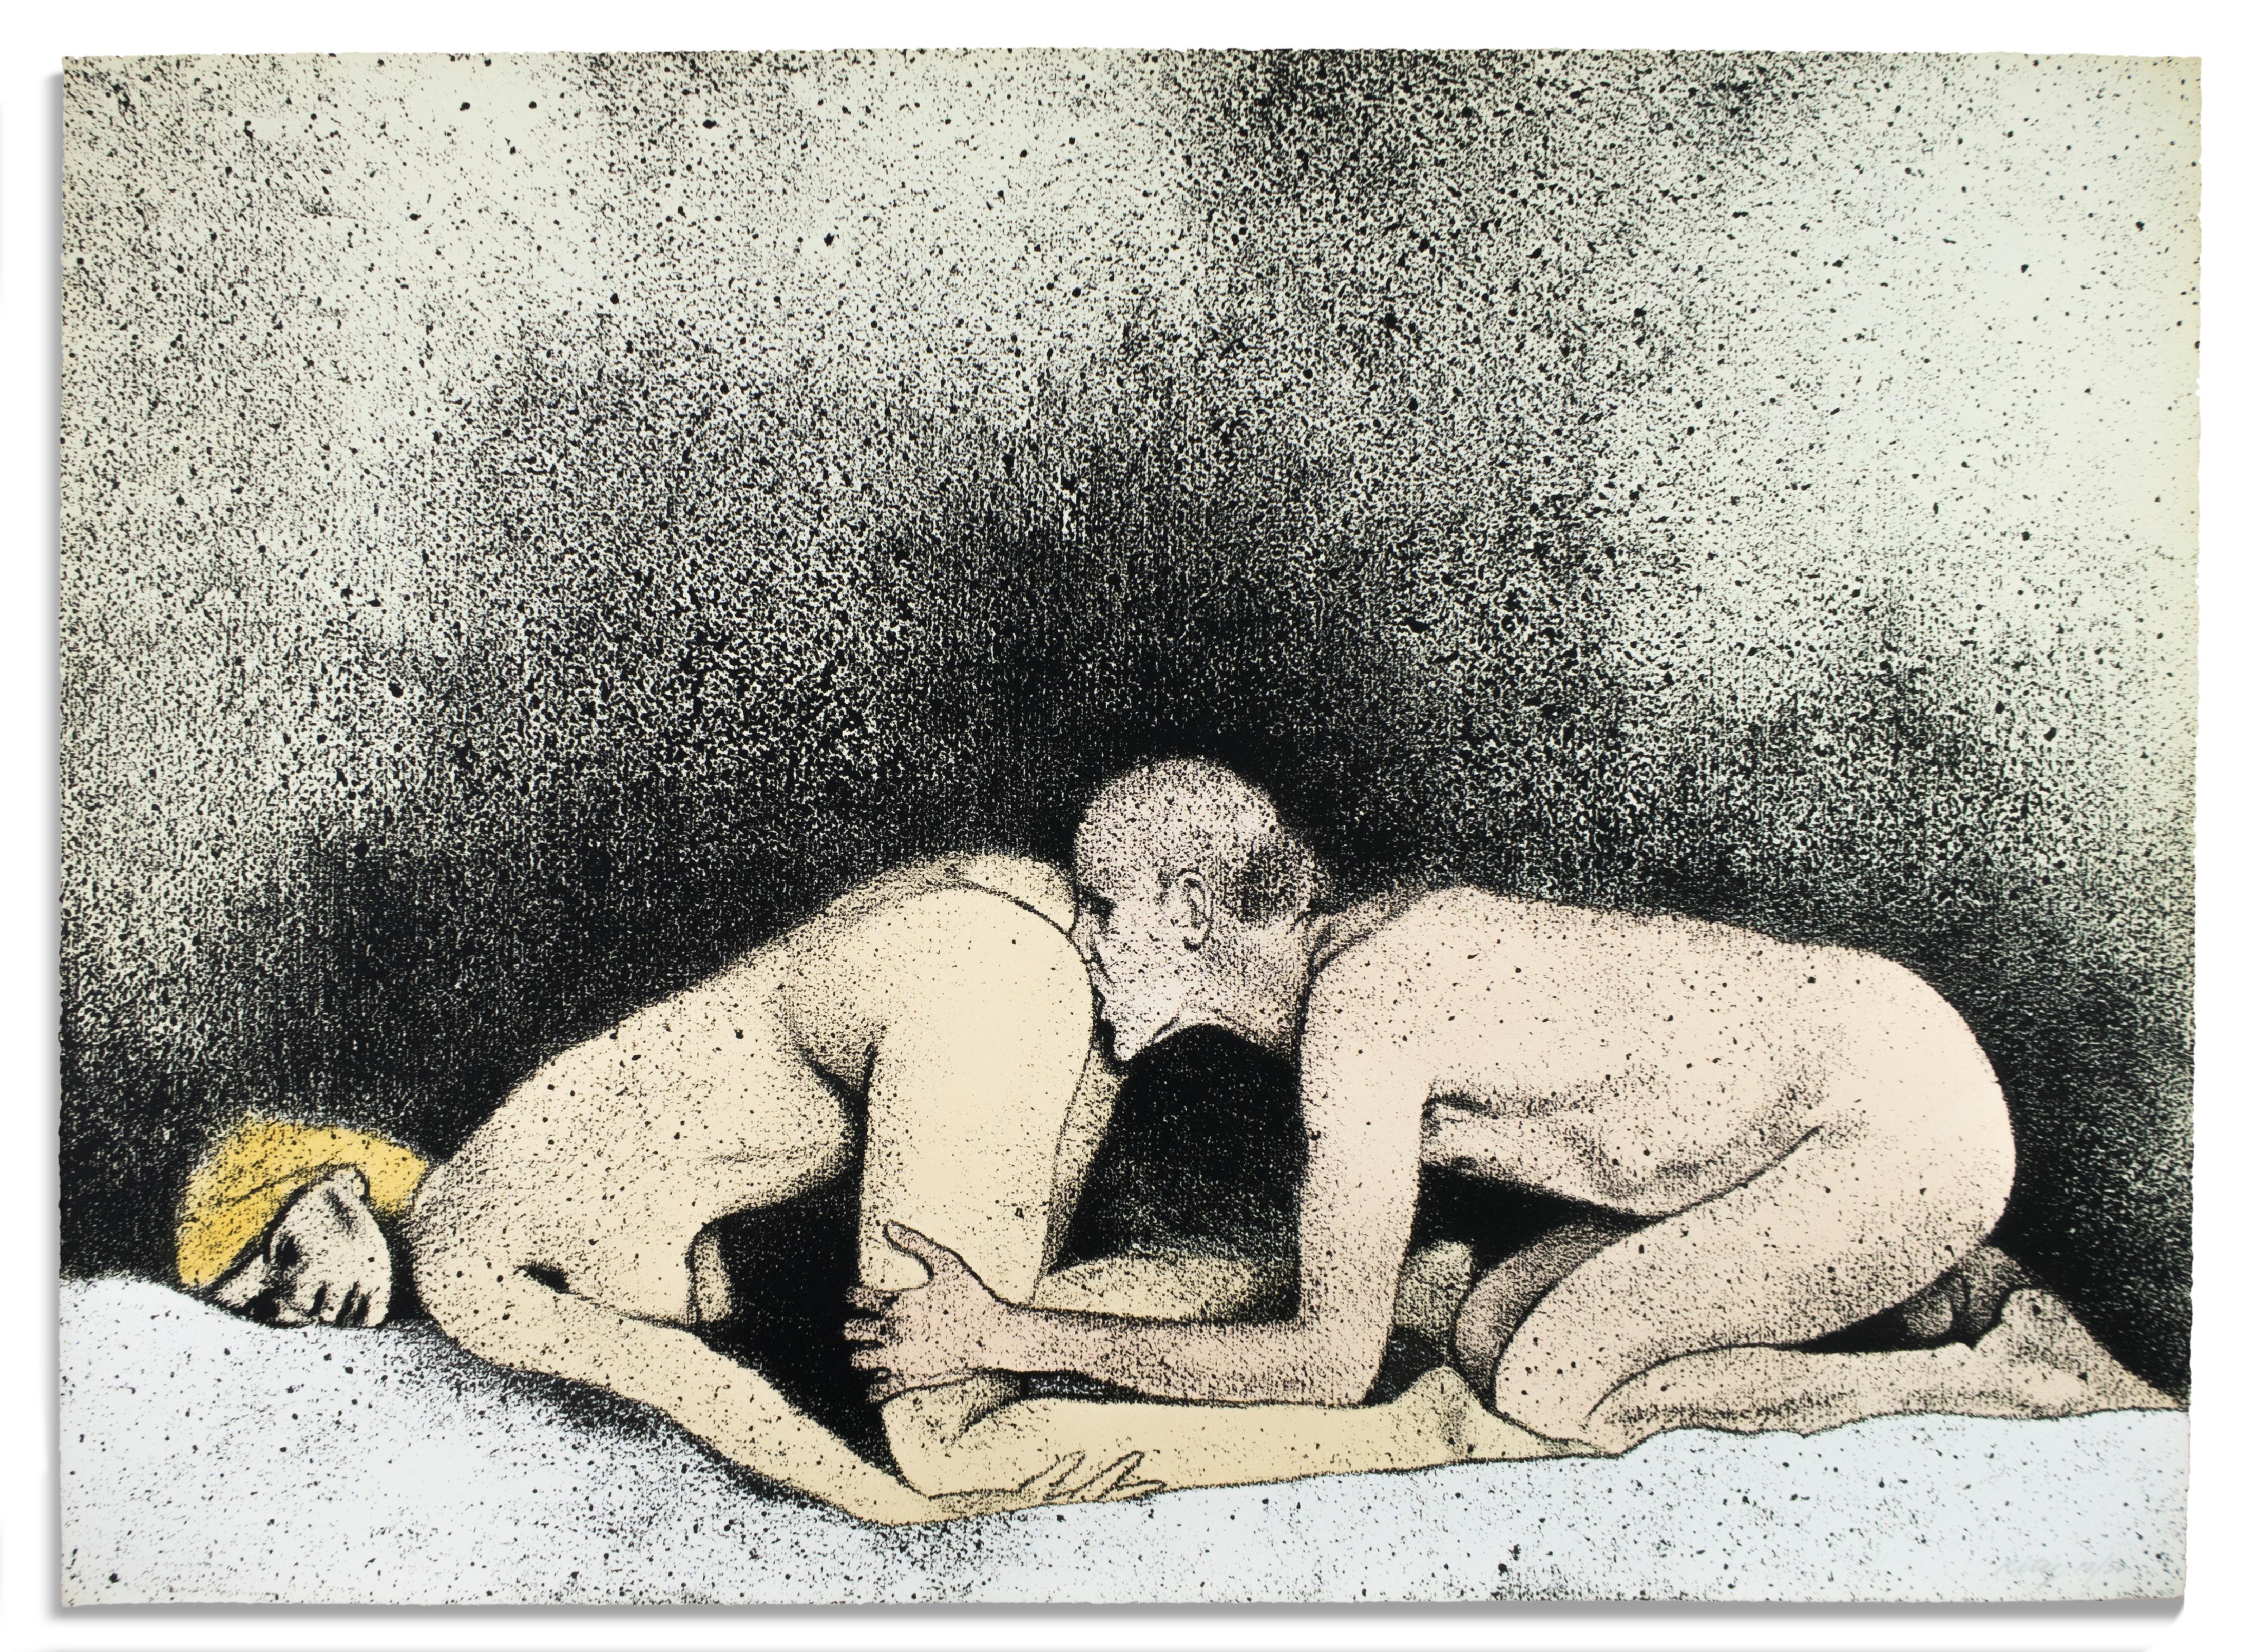 Portrait Print Ronald Brooks Kitaj - Certains ne le font pas (A) I. B. Kitaj dessin érotique d'une blonde nue avec un homme sur un lit